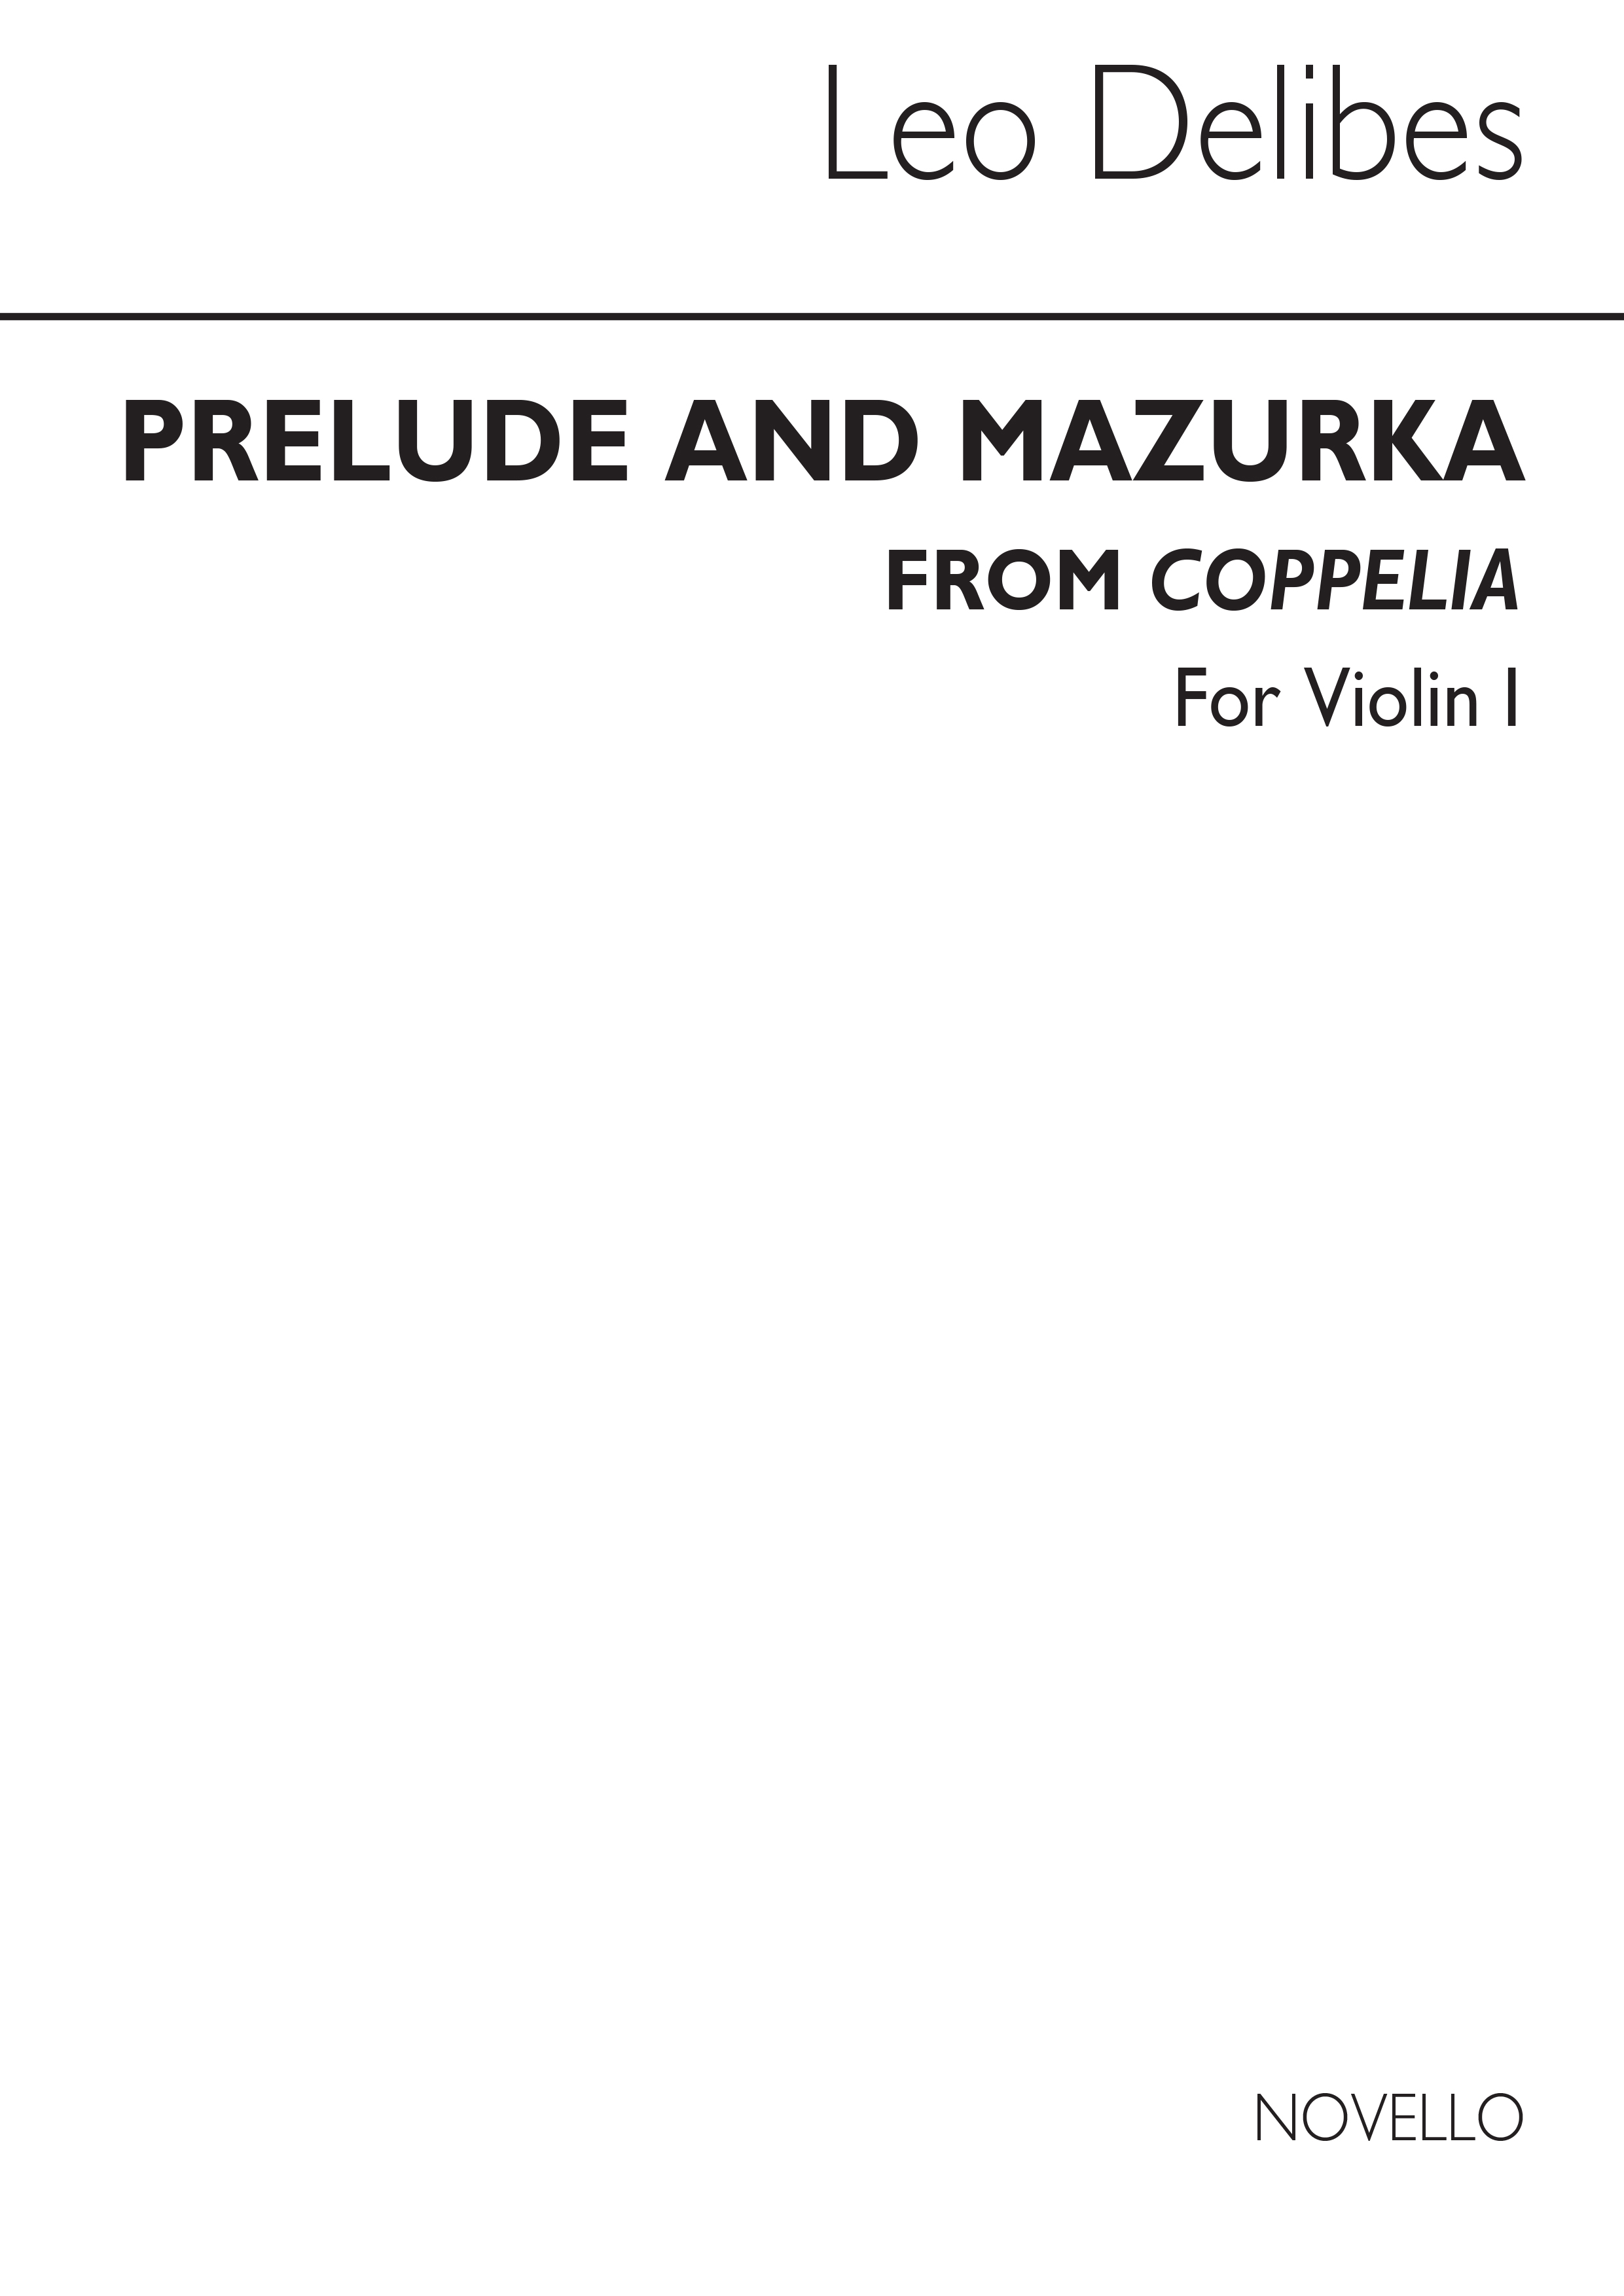 Leo Delibes: Prelude & Mazurka (Cobb) Vln 1